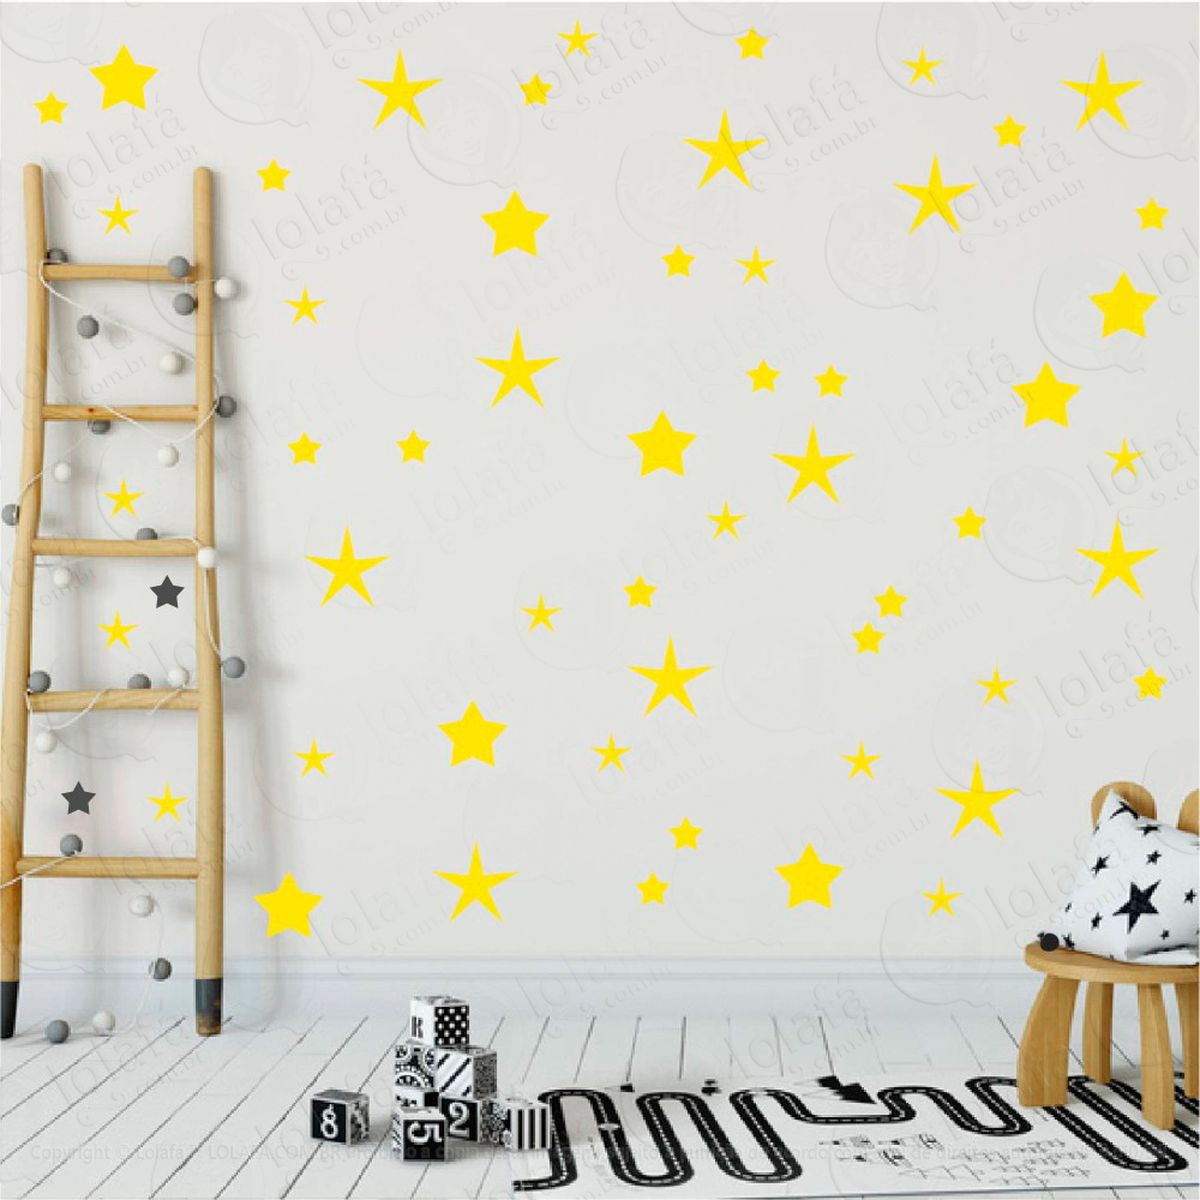 adesivos estrelas 90 peças adesivos para quarto de bebê infantil - mod:25